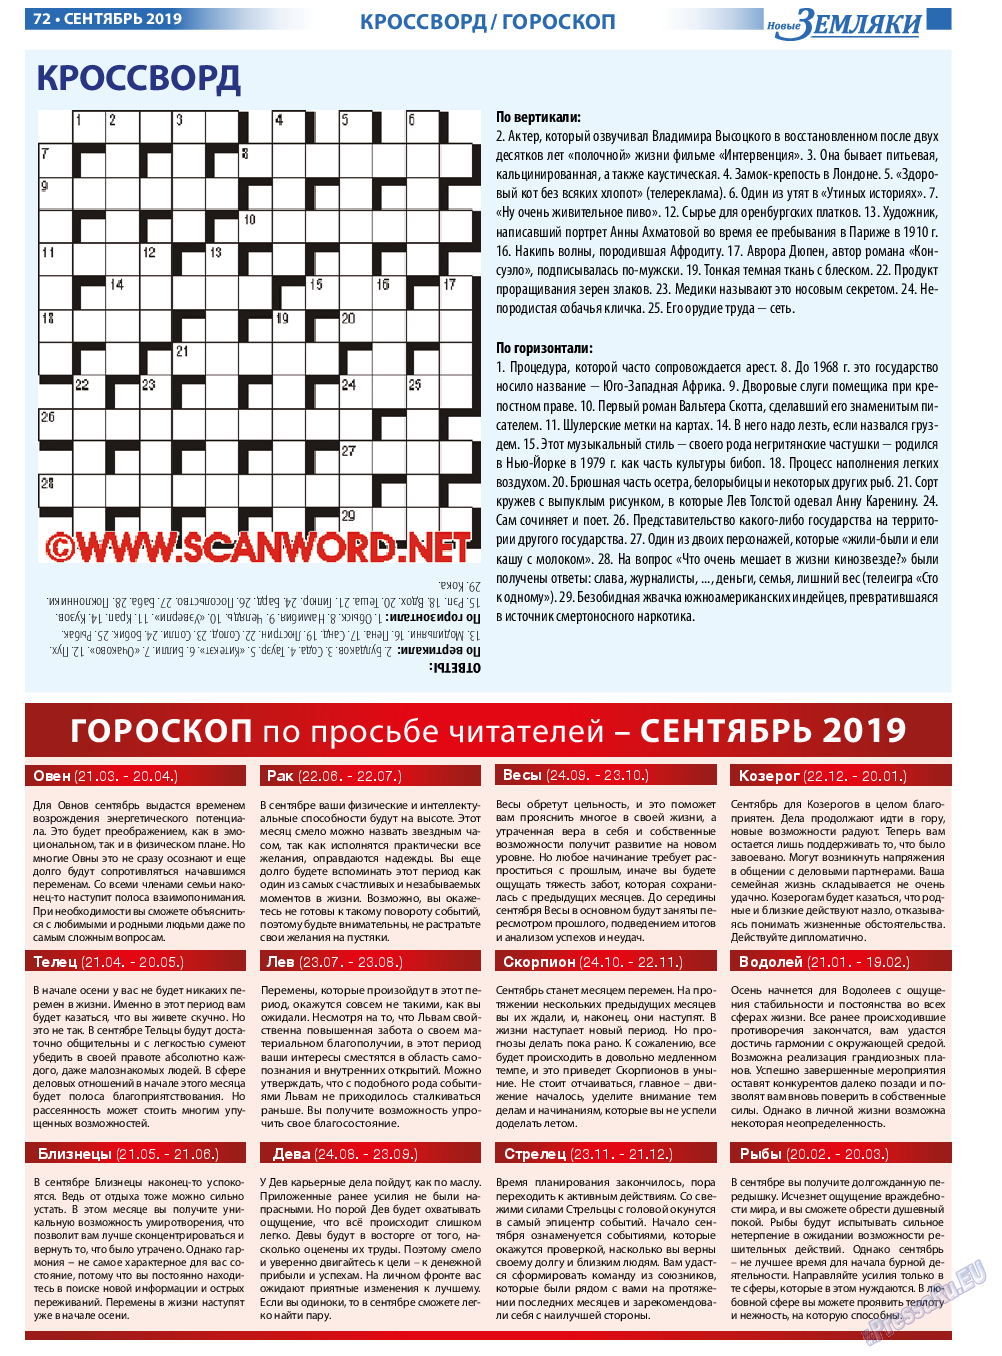 Новые Земляки, газета. 2019 №9 стр.72